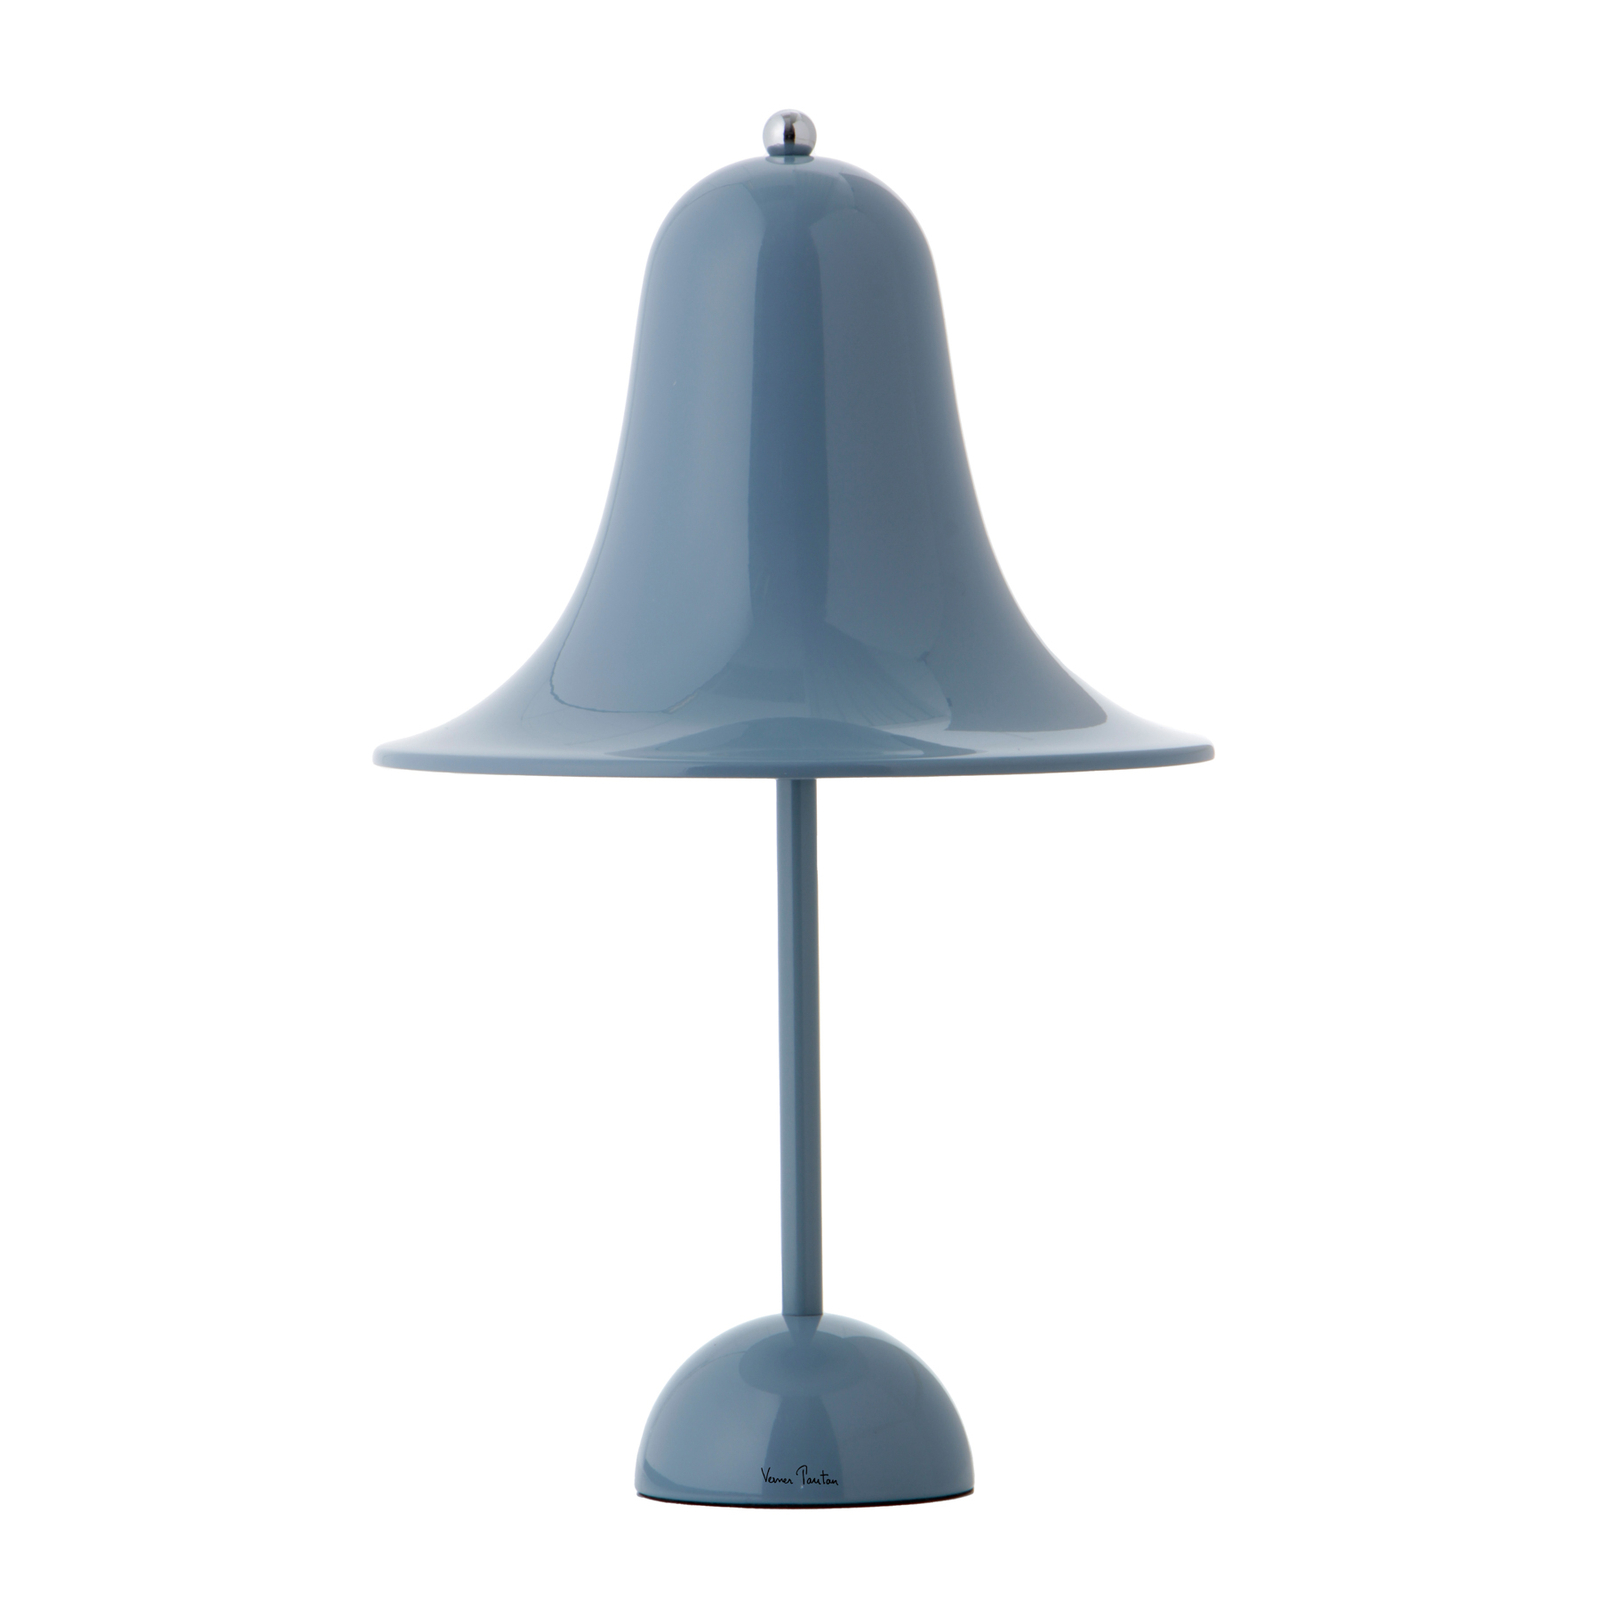 VERPAN Pantop bordlampe støvblå